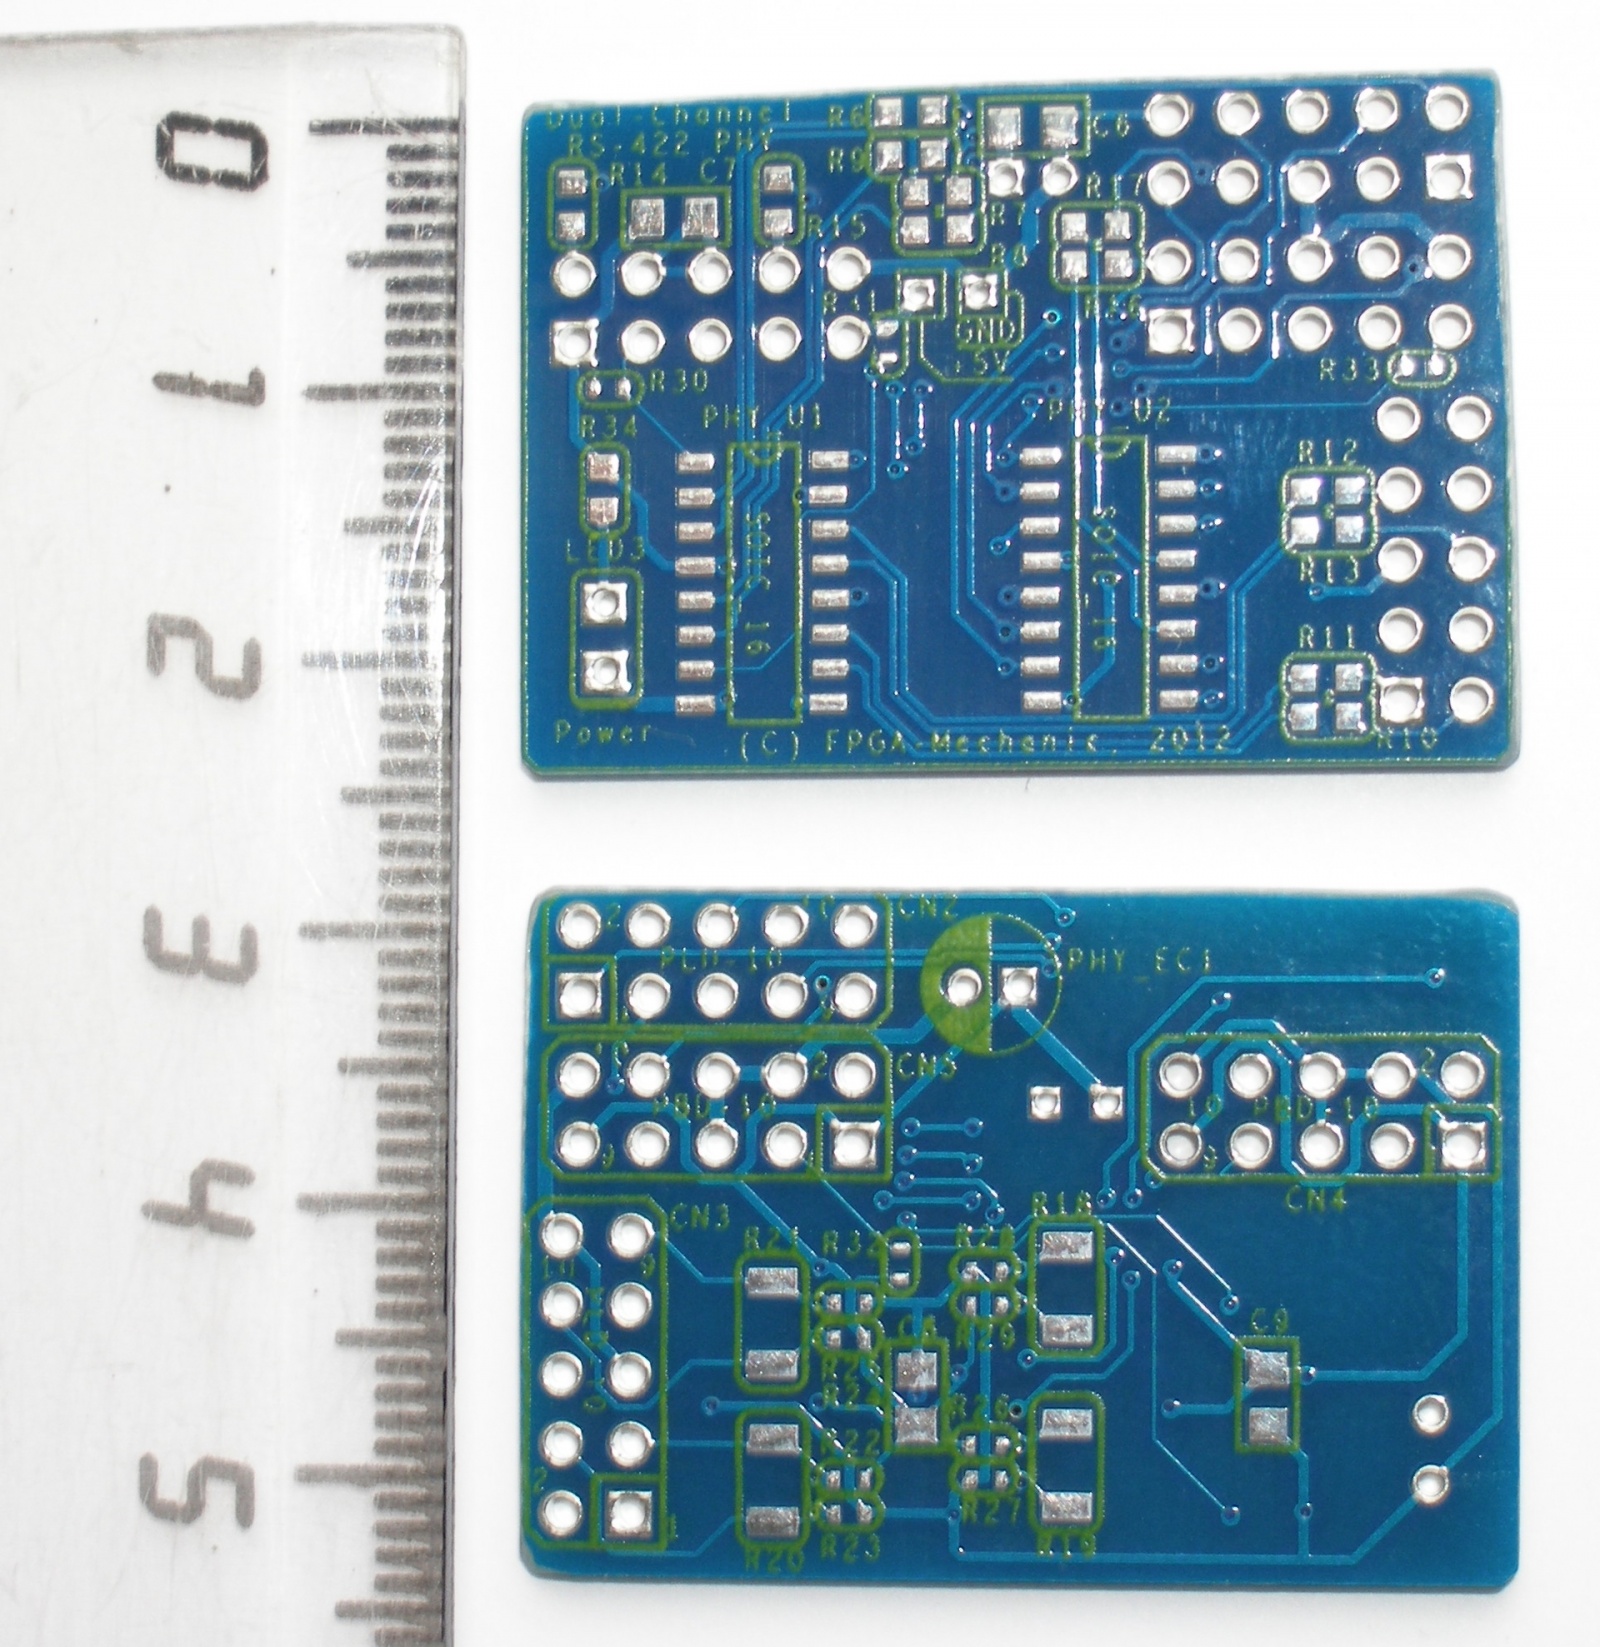 Адаптеры сопряжения RS-422 с поддержкой скоростей до 1Мбод для системной шины PCI - 20